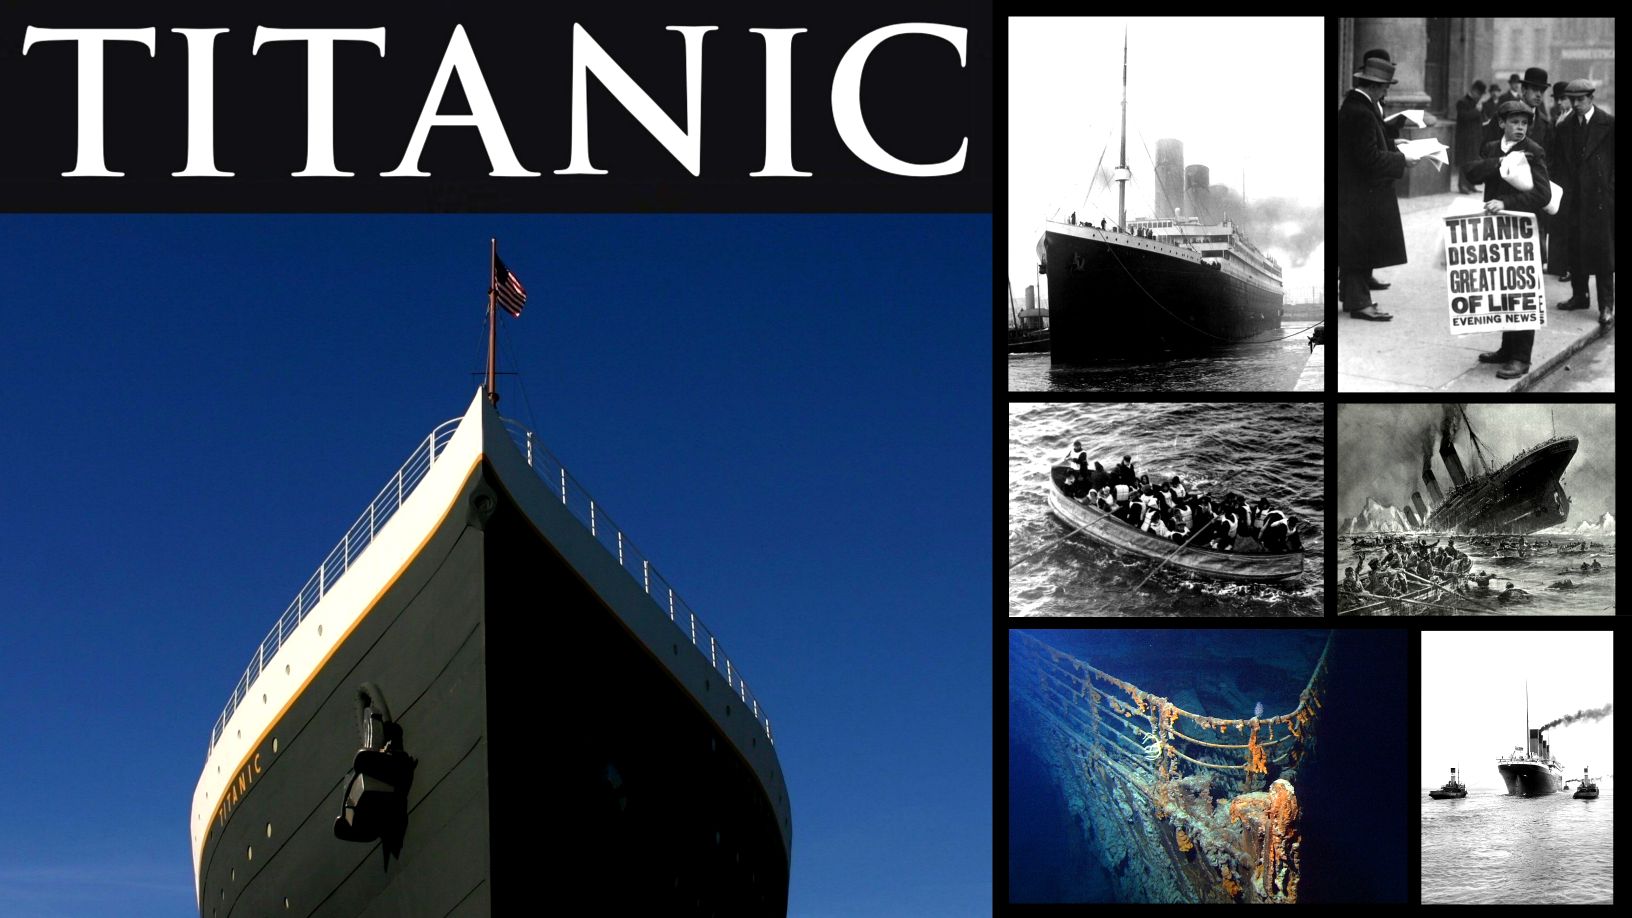 Rahasia poék sareng sababaraha kanyataan anu henteu dipikaterang tukangeun bencana Titanic 1